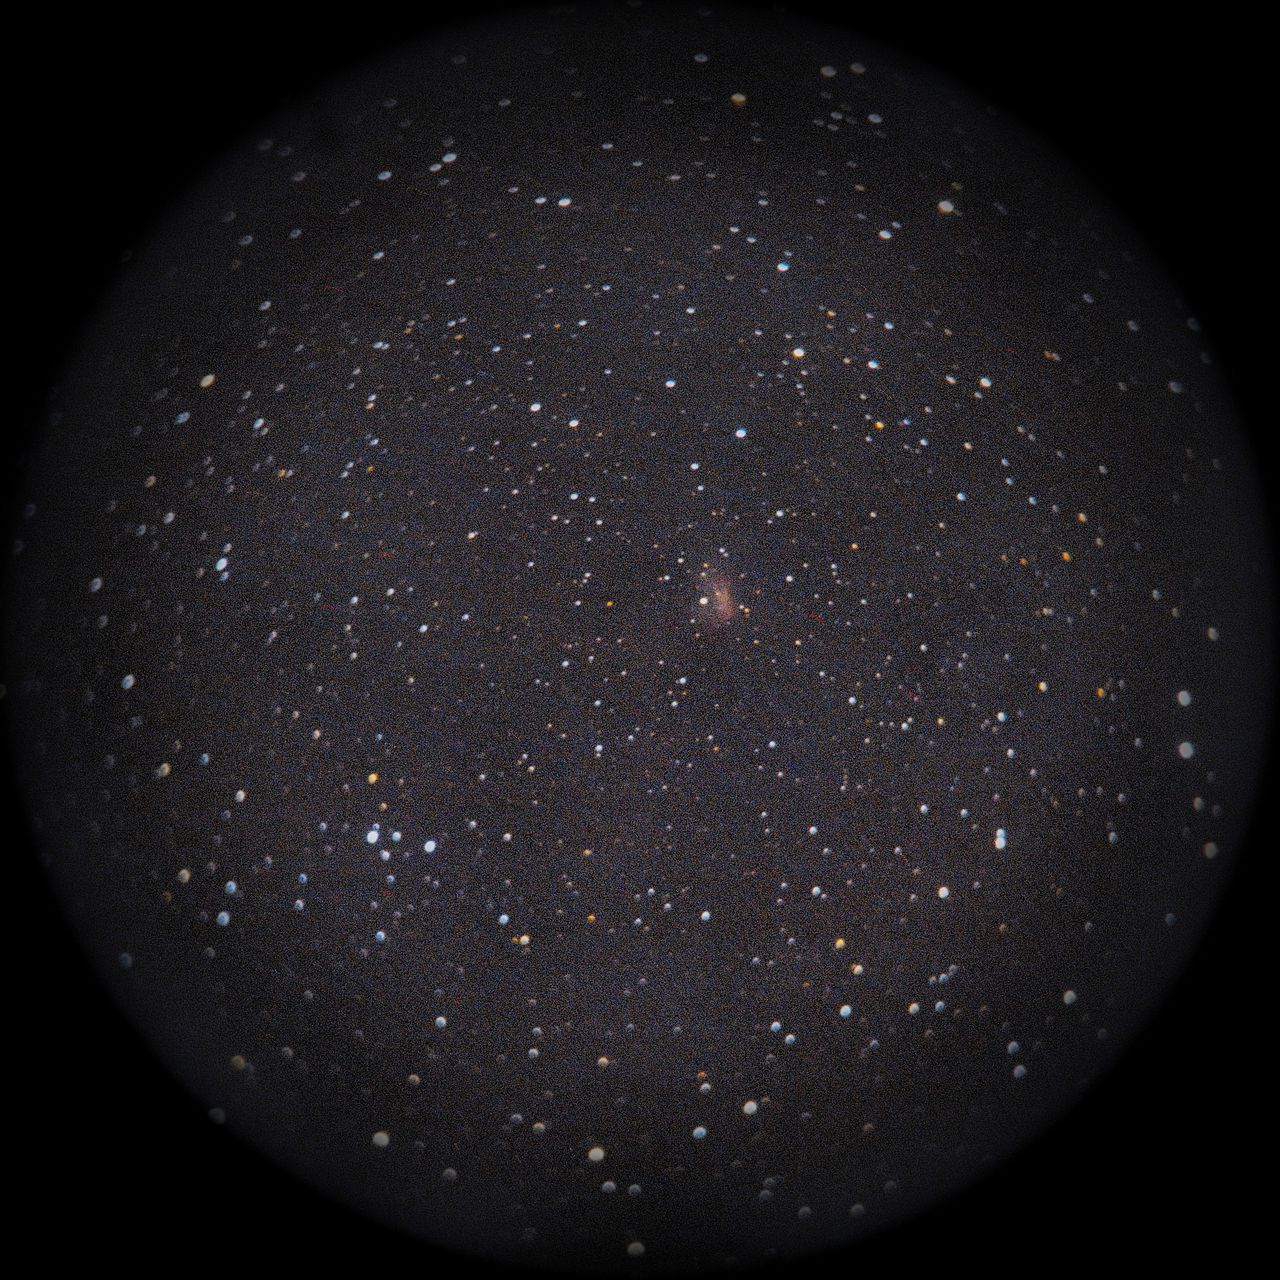 Image of NGC1491